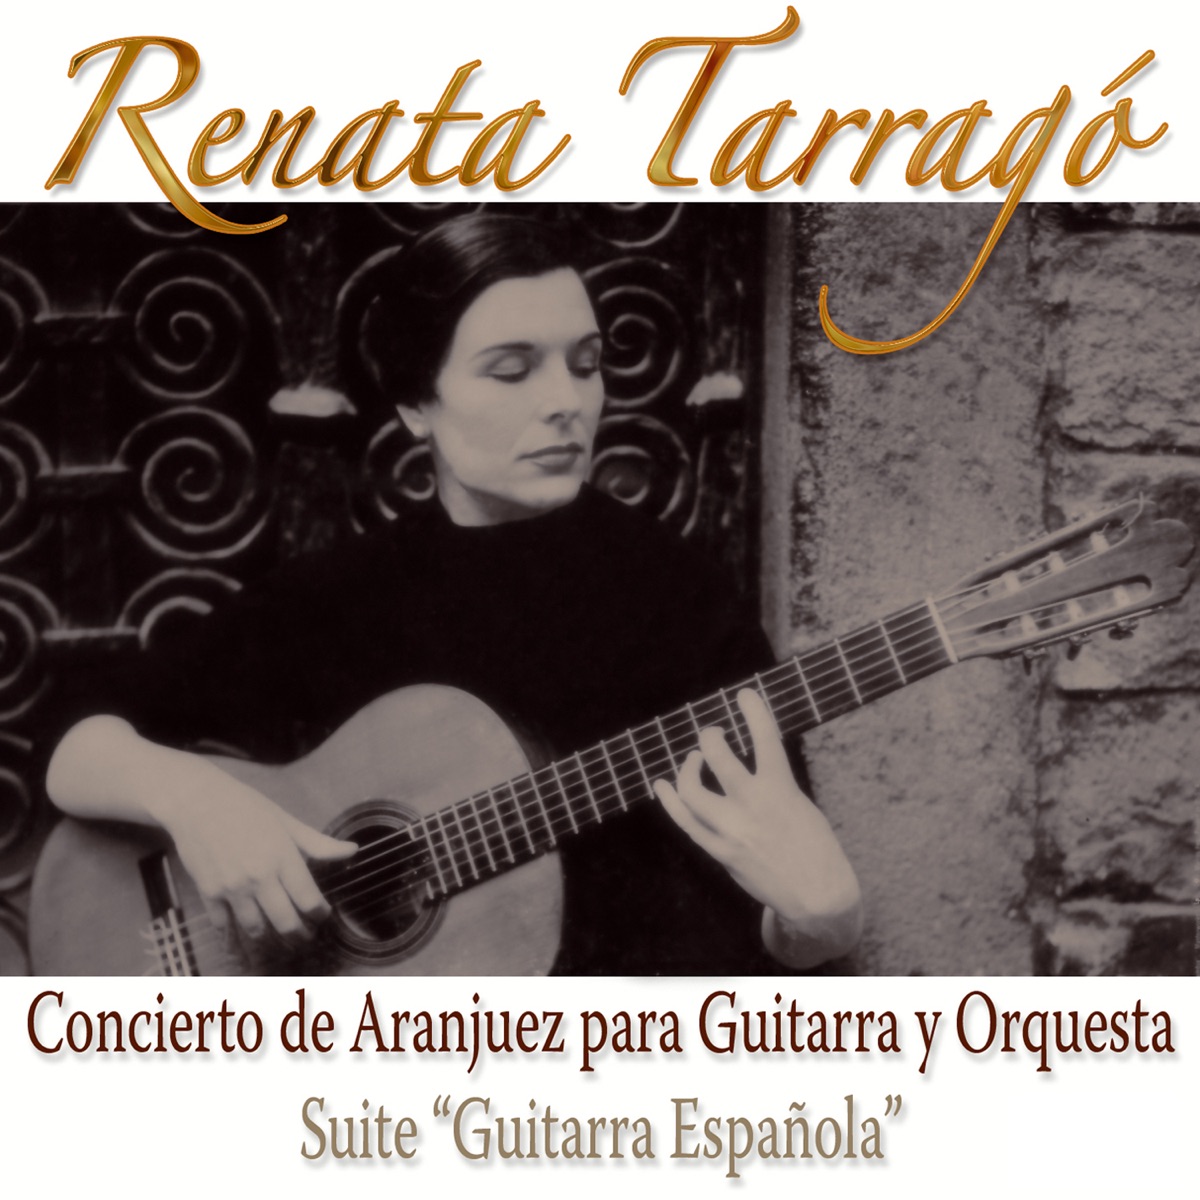 Concierto de Aranjuez Para Guitarra y Orquesta / Suite Guitarra Española by  Renata Tarrago on Apple Music